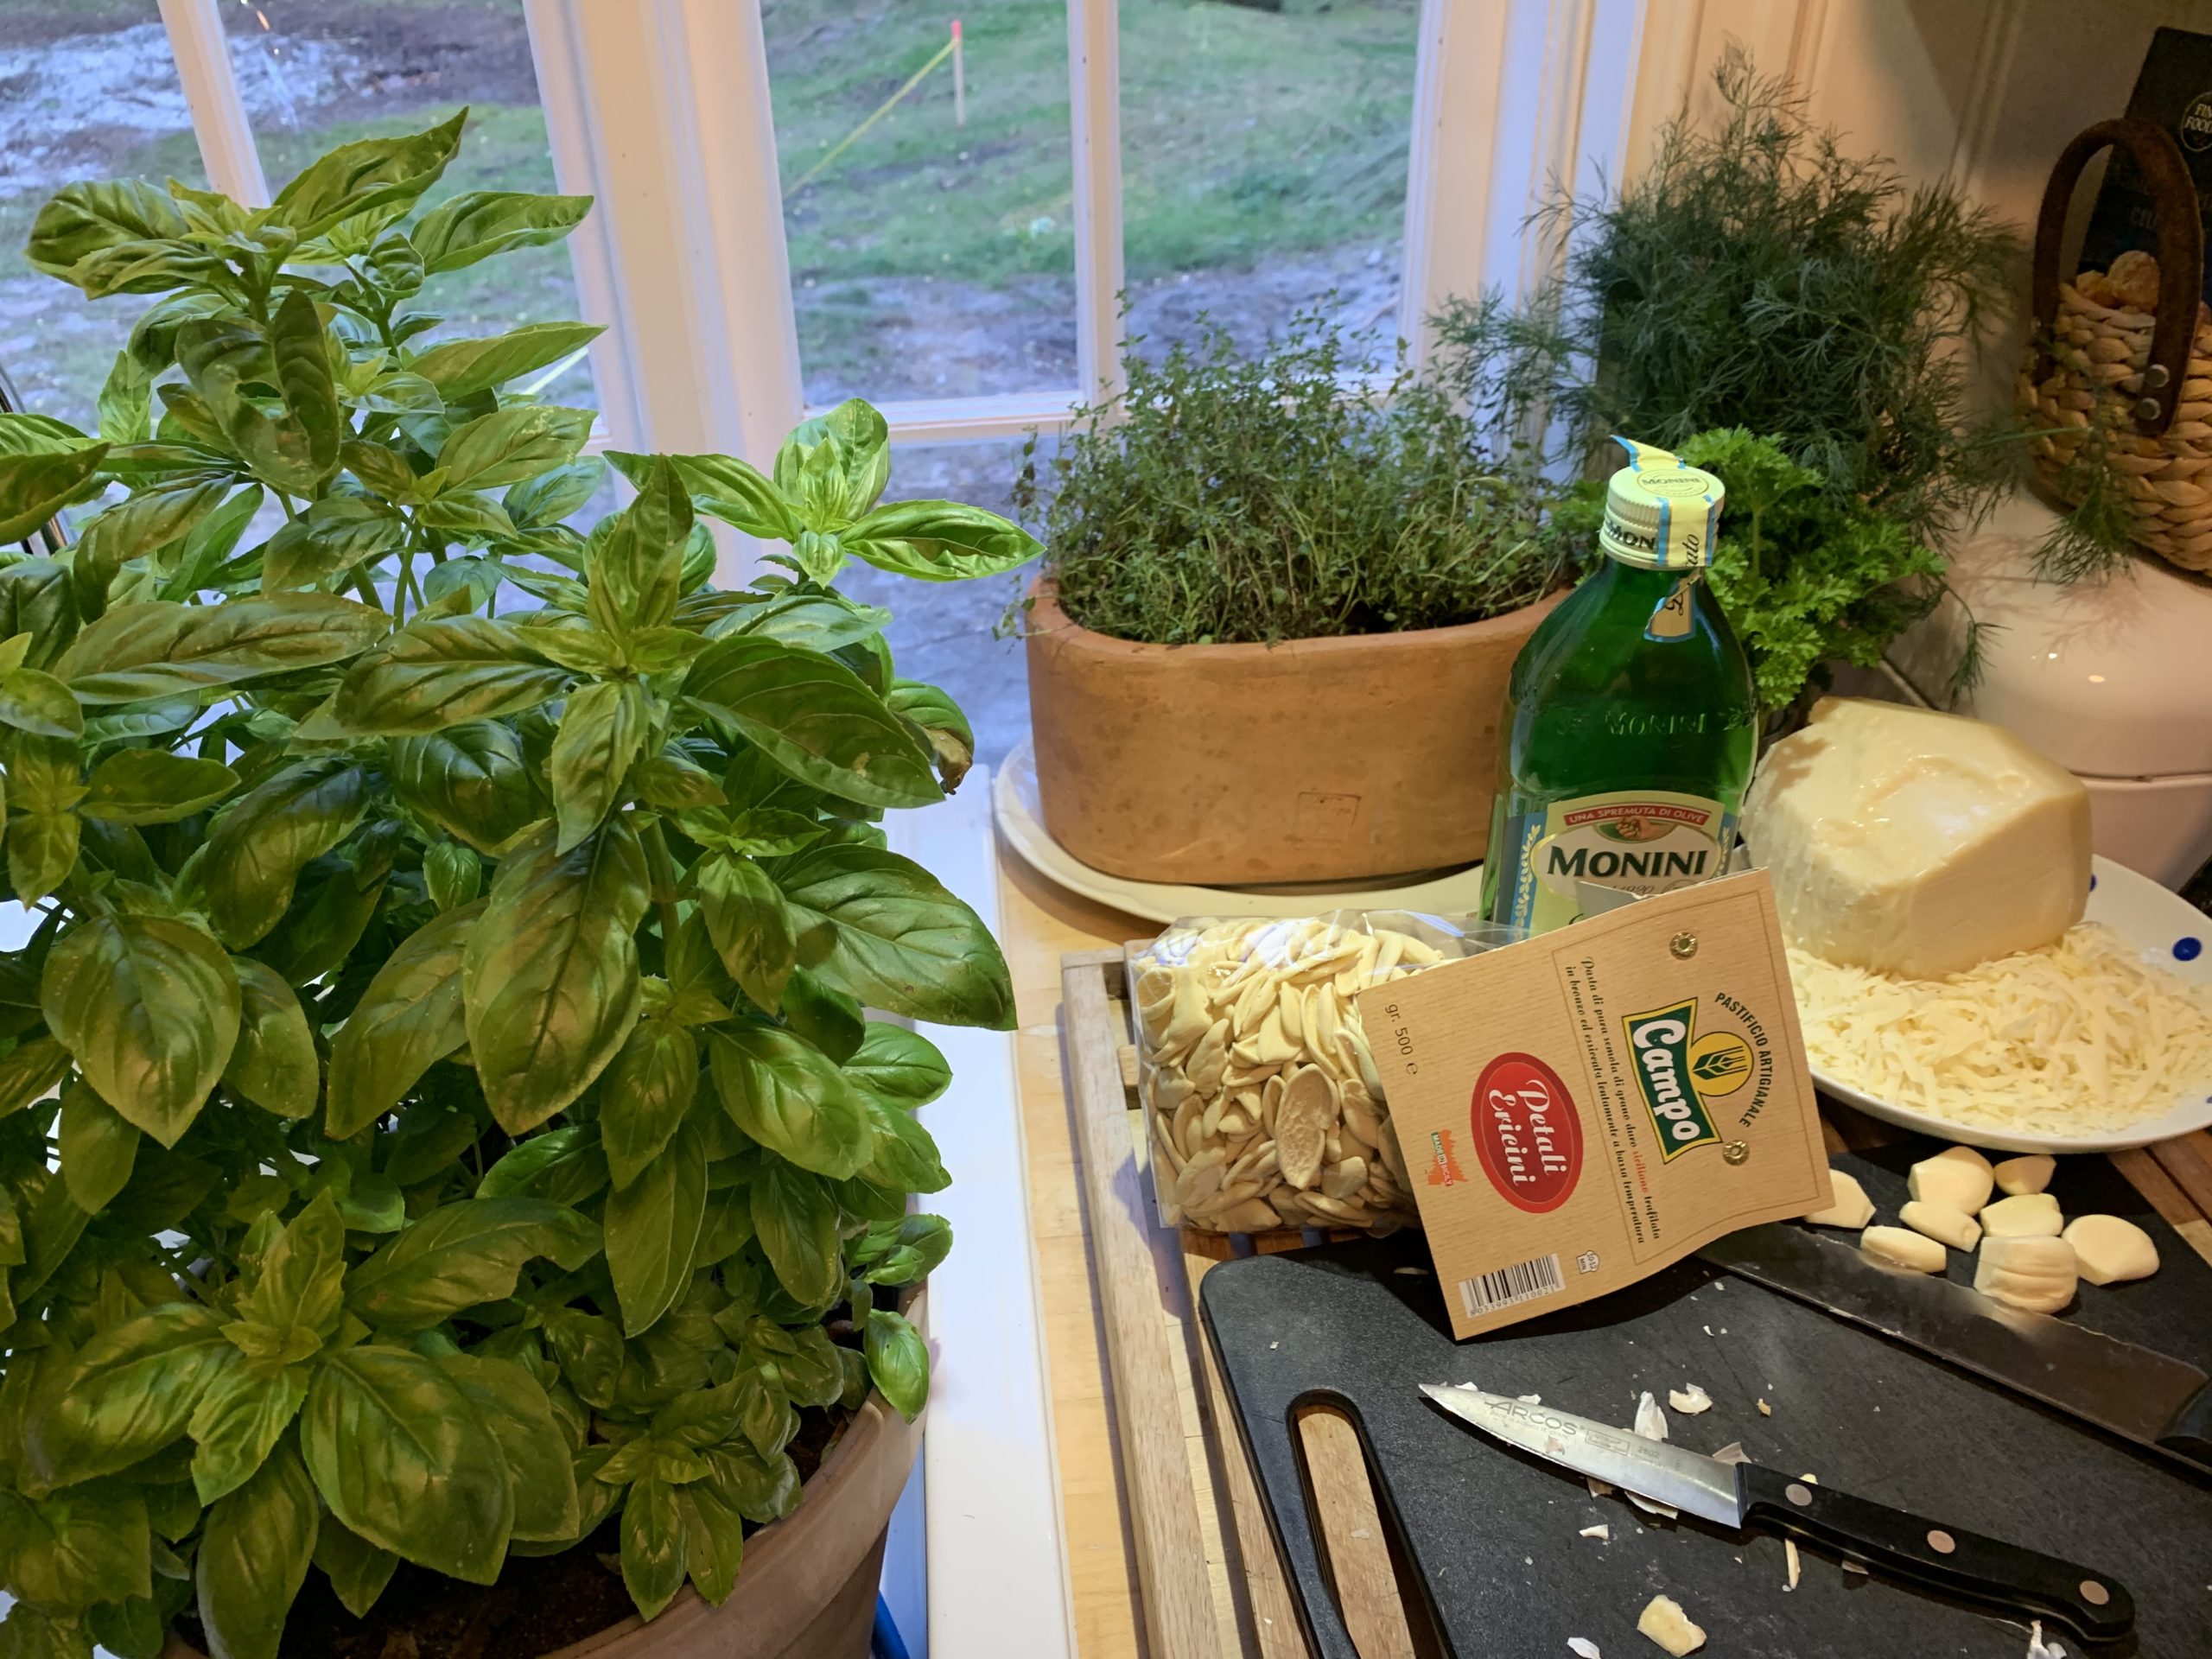 Pesto in the making